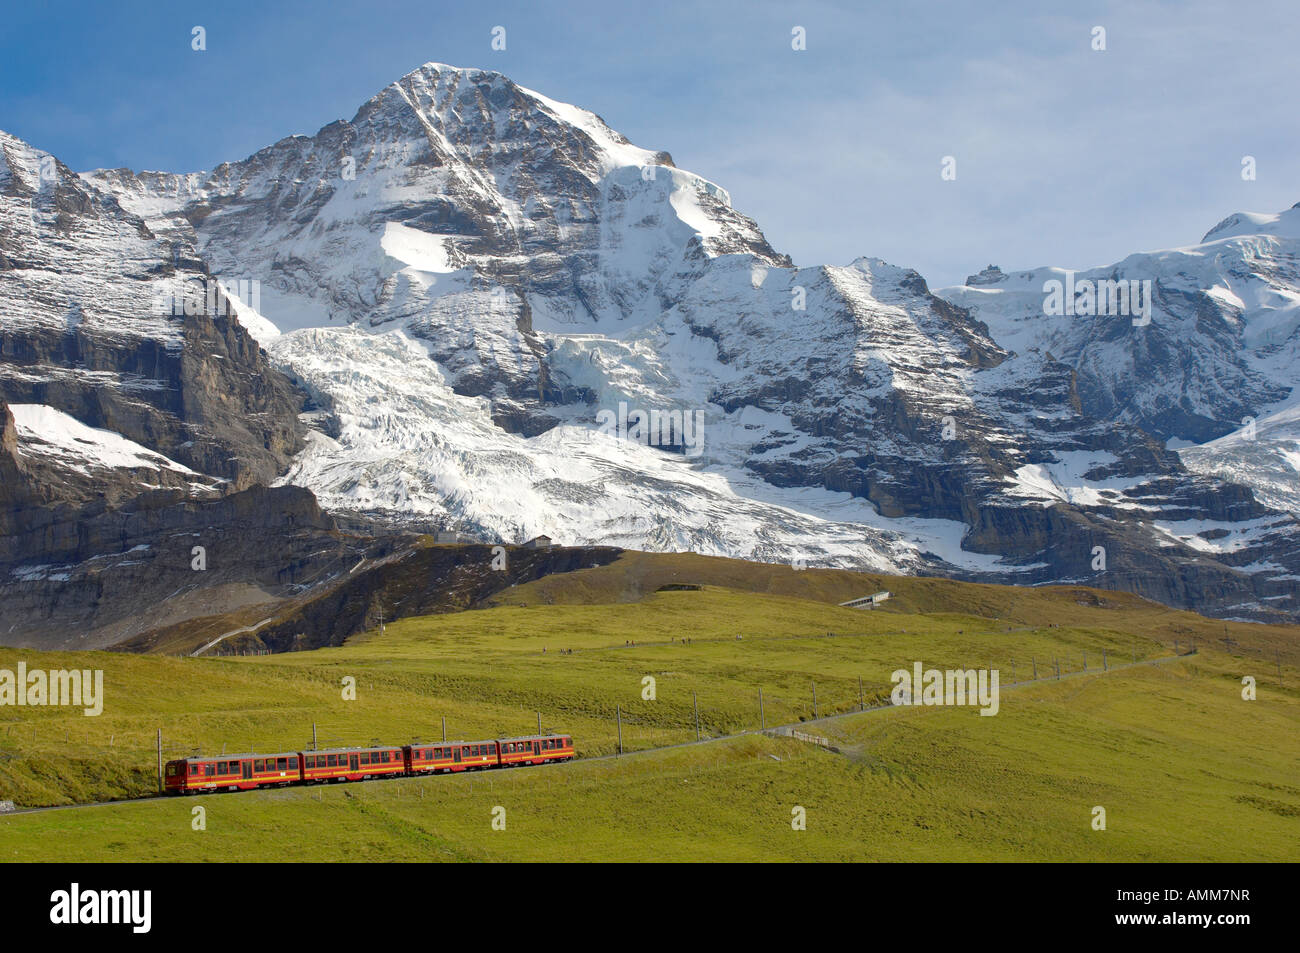 Avec le train de la Jungfrau De Kleine Scheidegg. Grindelwald, Suisse Alpes suisses. Banque D'Images